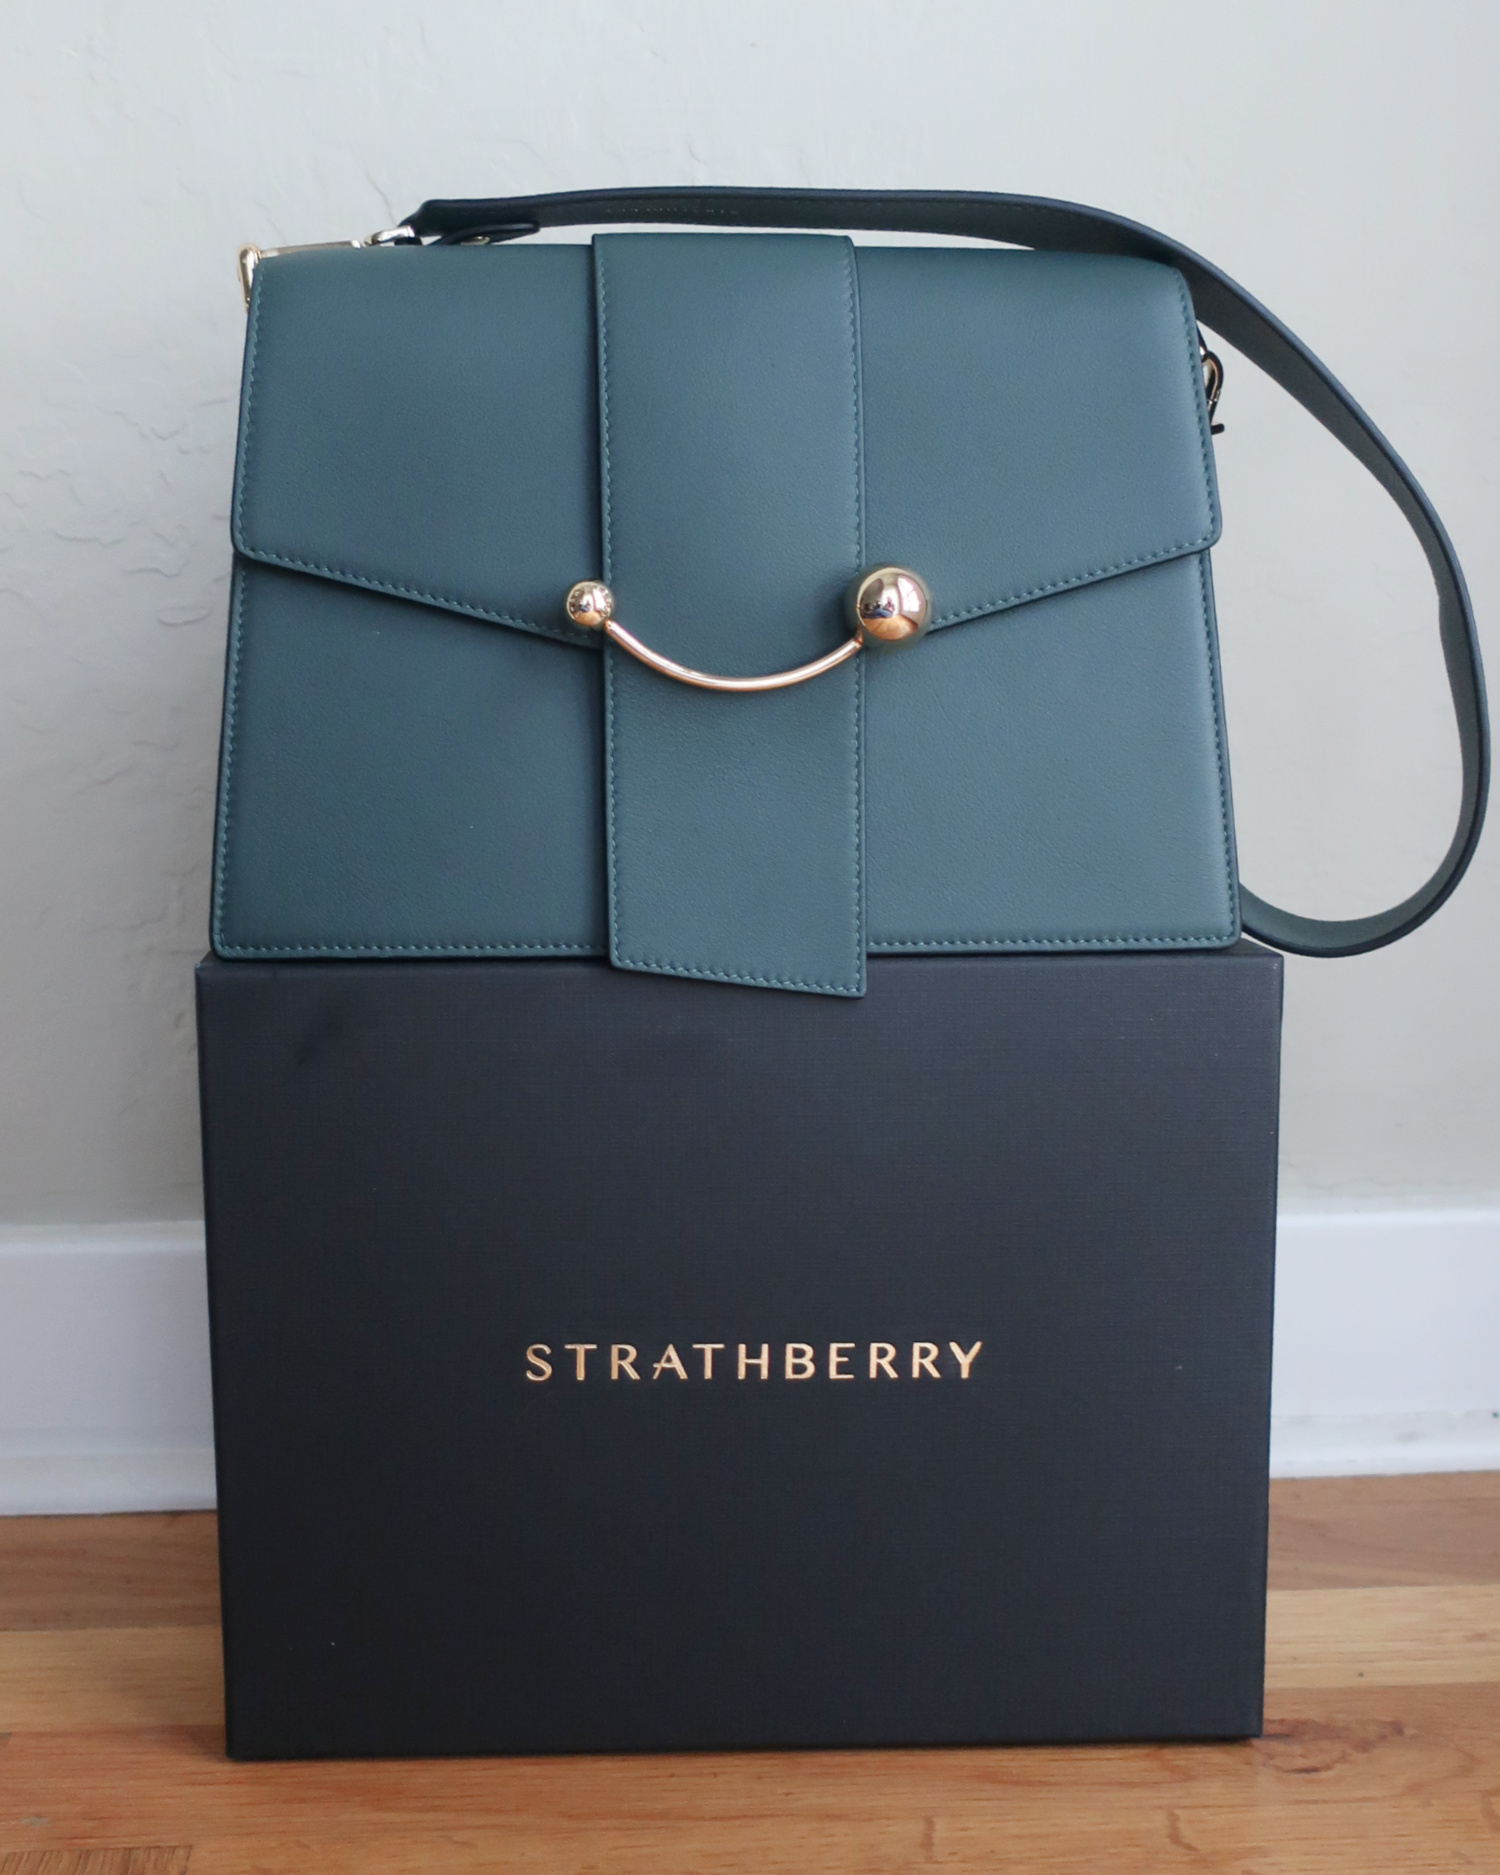 Strathberry Crescent Shoulder Bag in Bottle Green Review